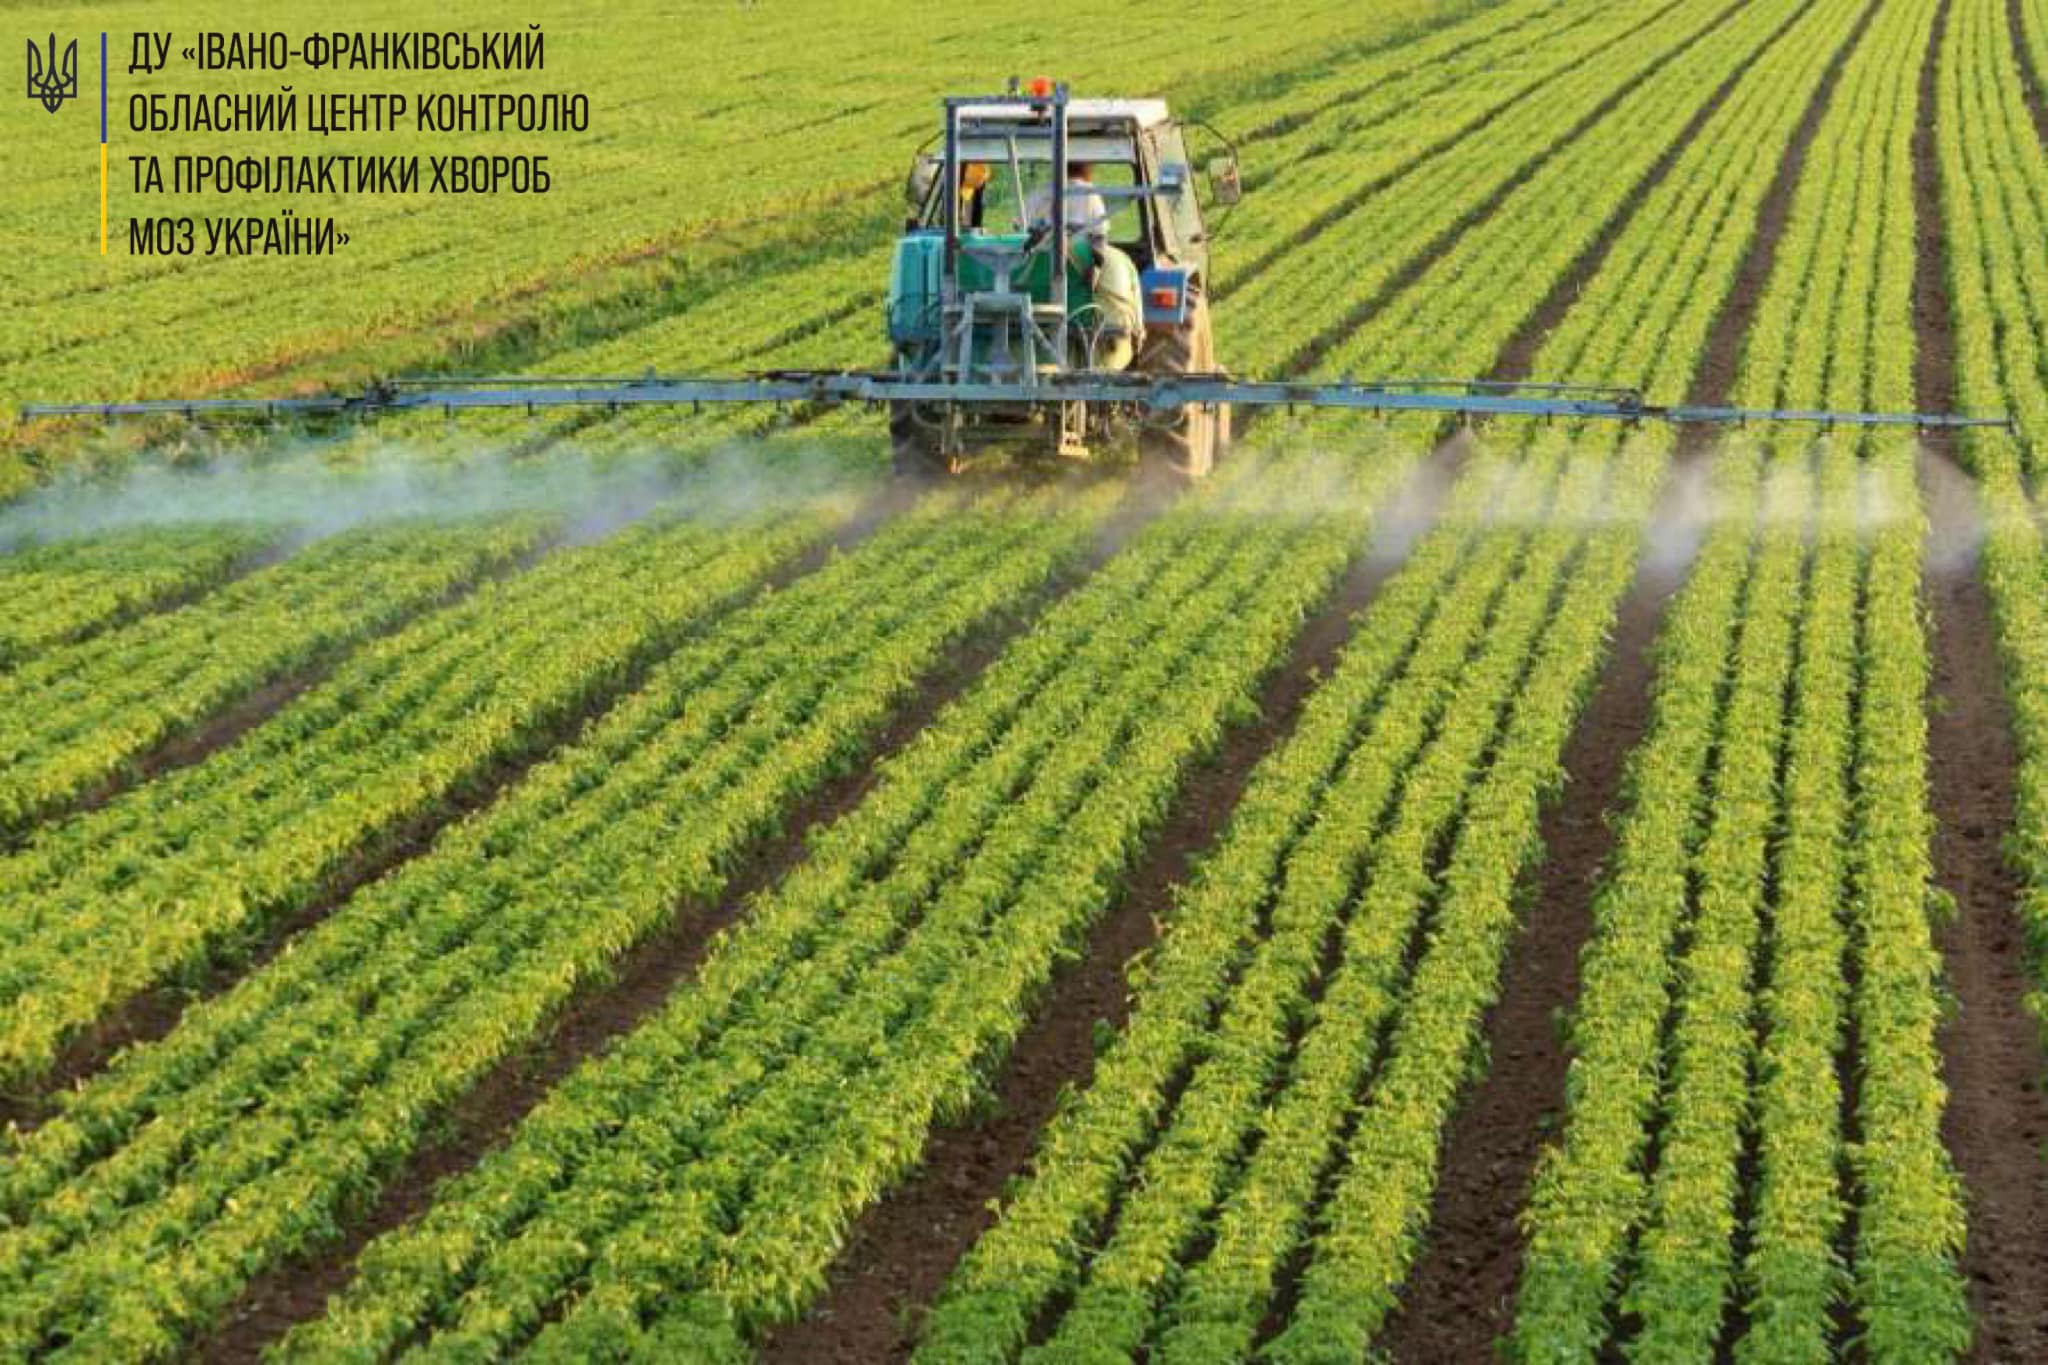 Пестициди і агрохімікати. Вимоги щодо їх застосування в межах населених пунктів.